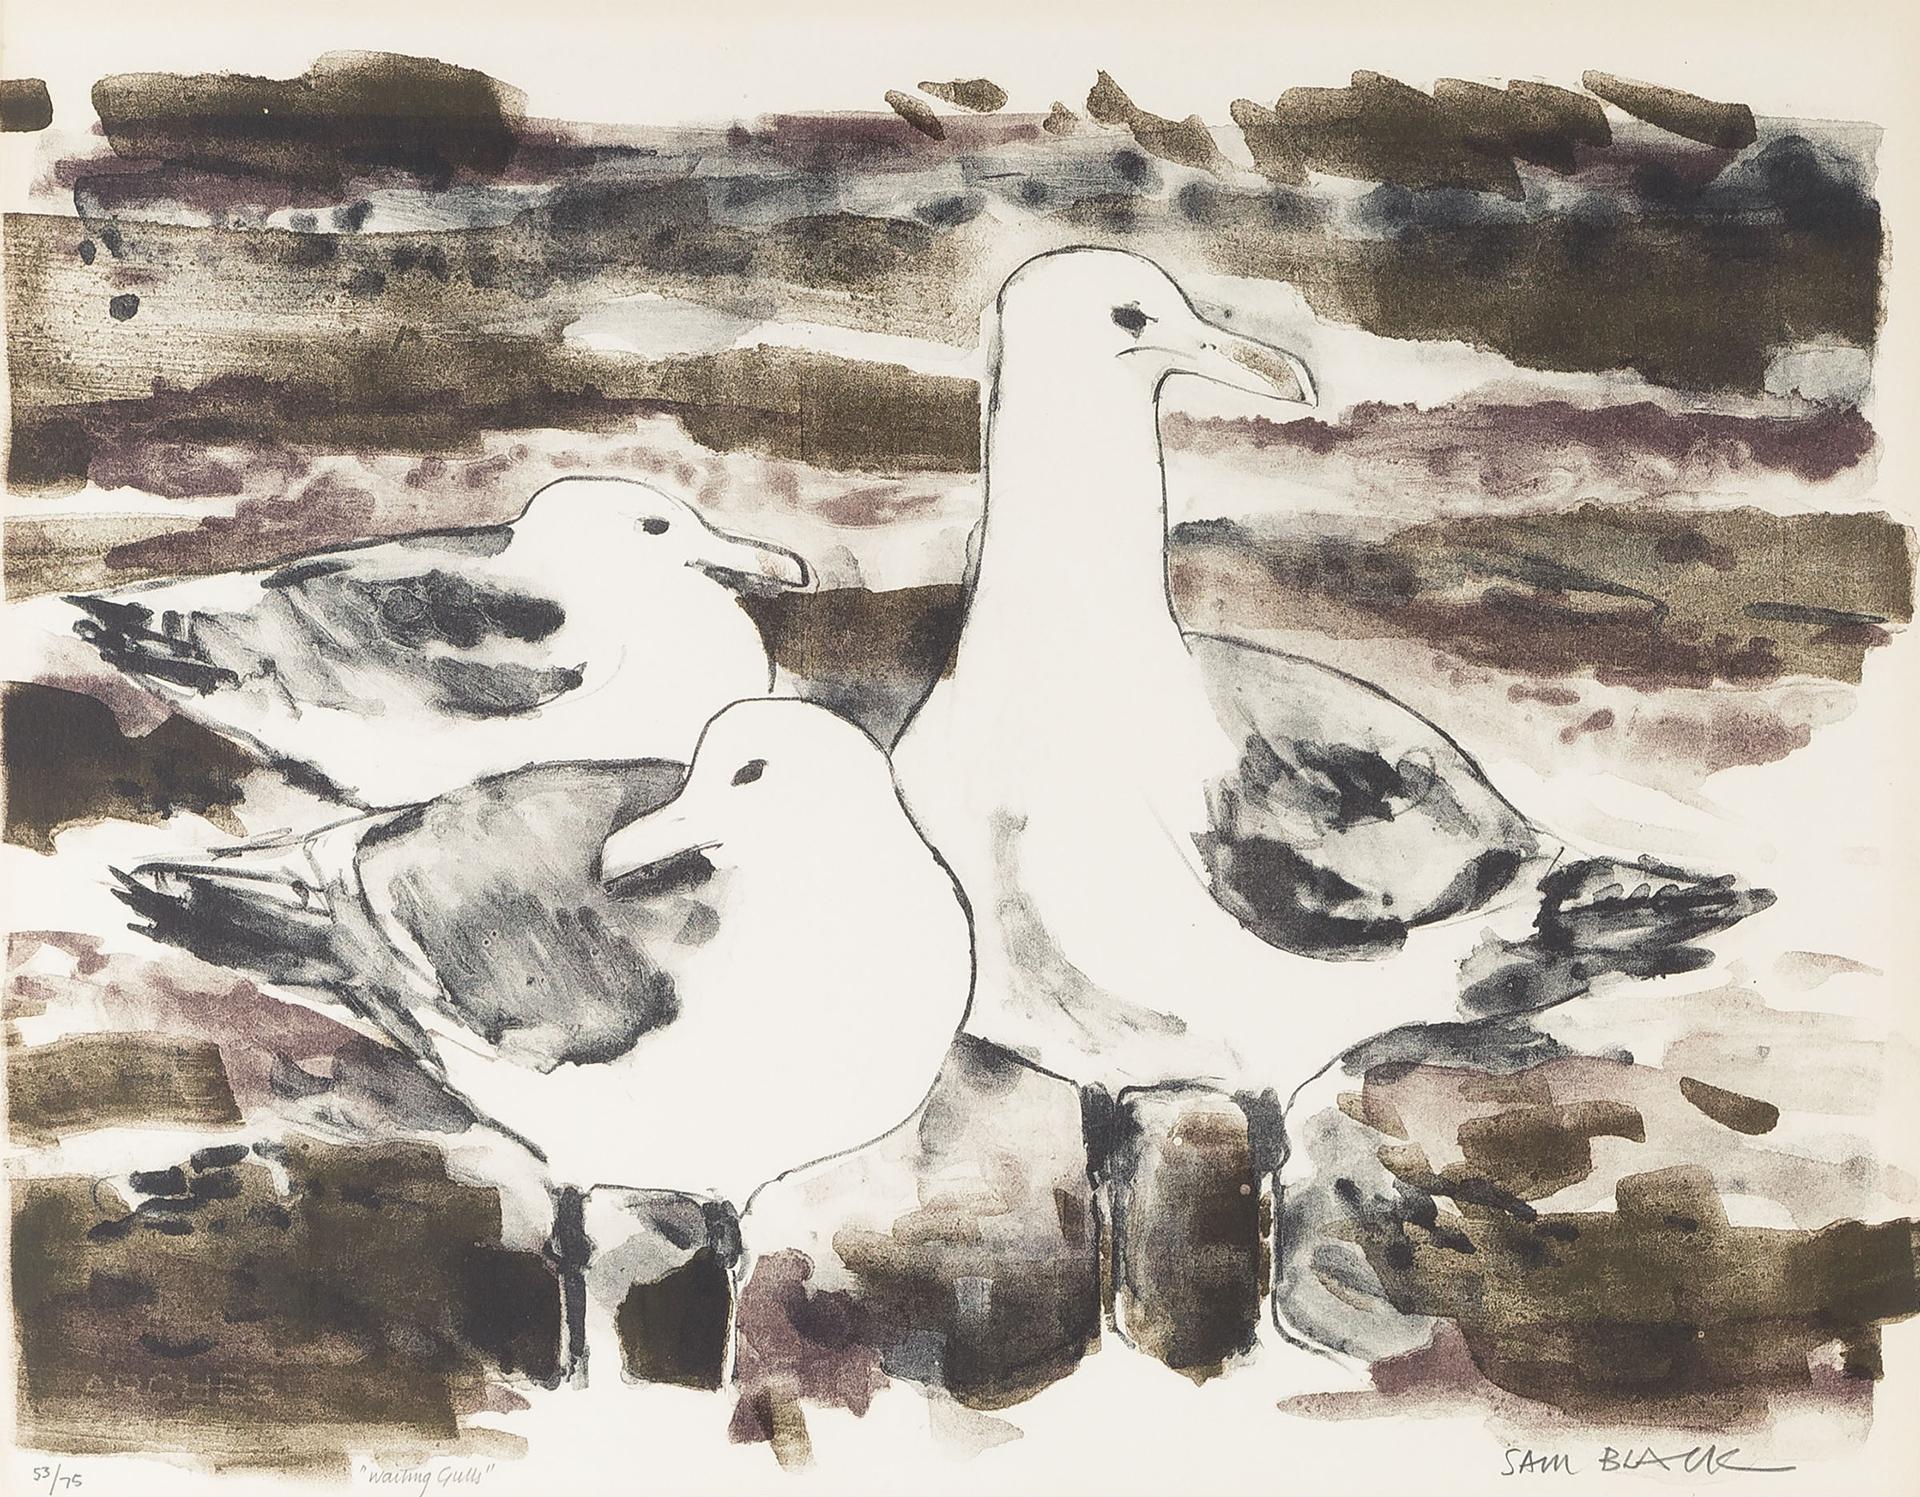 Samuel (Sam) Black (1913-1988) - Waiting Gulls